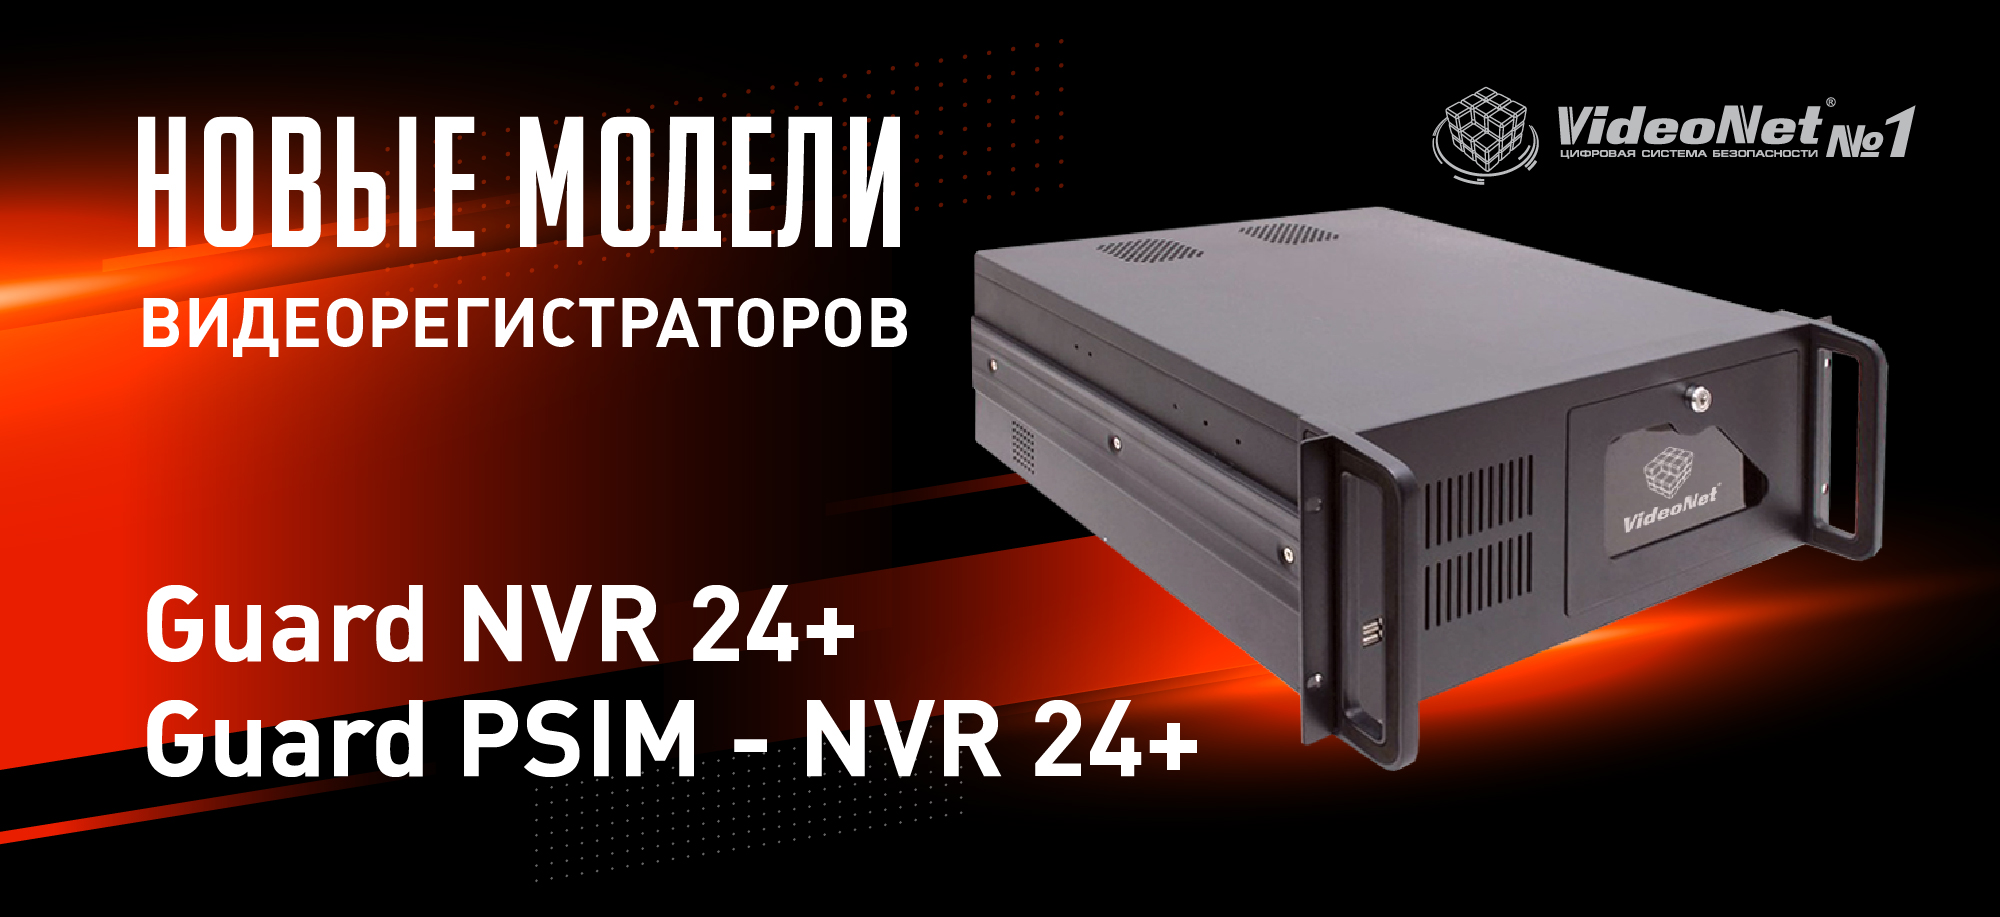 Новые модели видеорегистраторов VideoNet Guard NVR 24+ и Guard PSIM - NVR 24+.